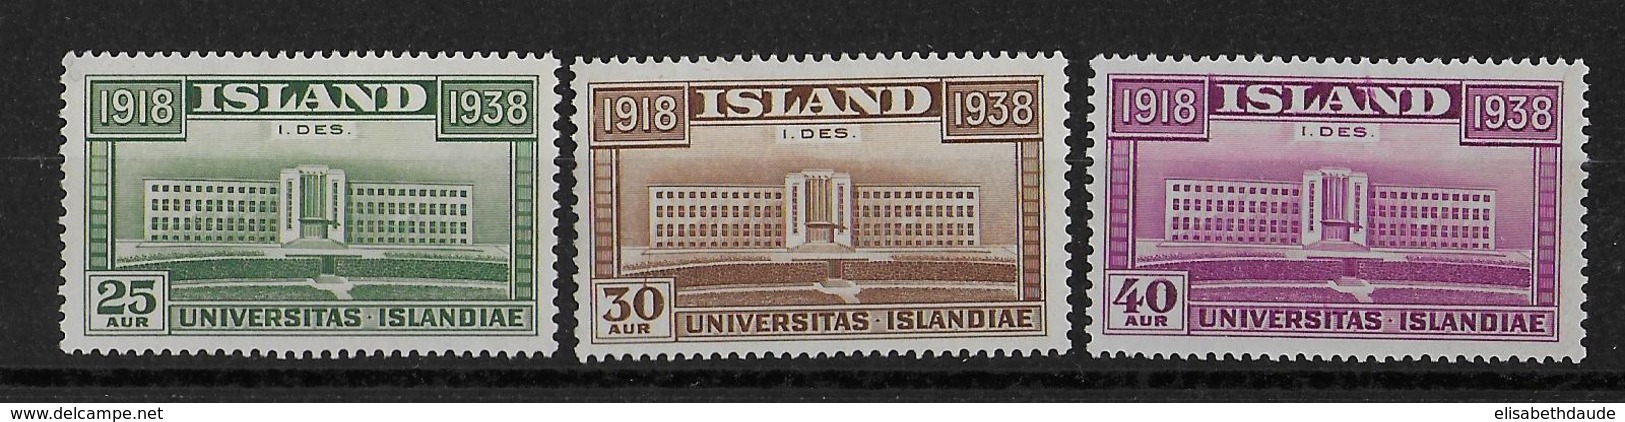 ISLANDE - 1938 - YVERT N° 168/170 * - COTE = 27 EURO - Ongebruikt